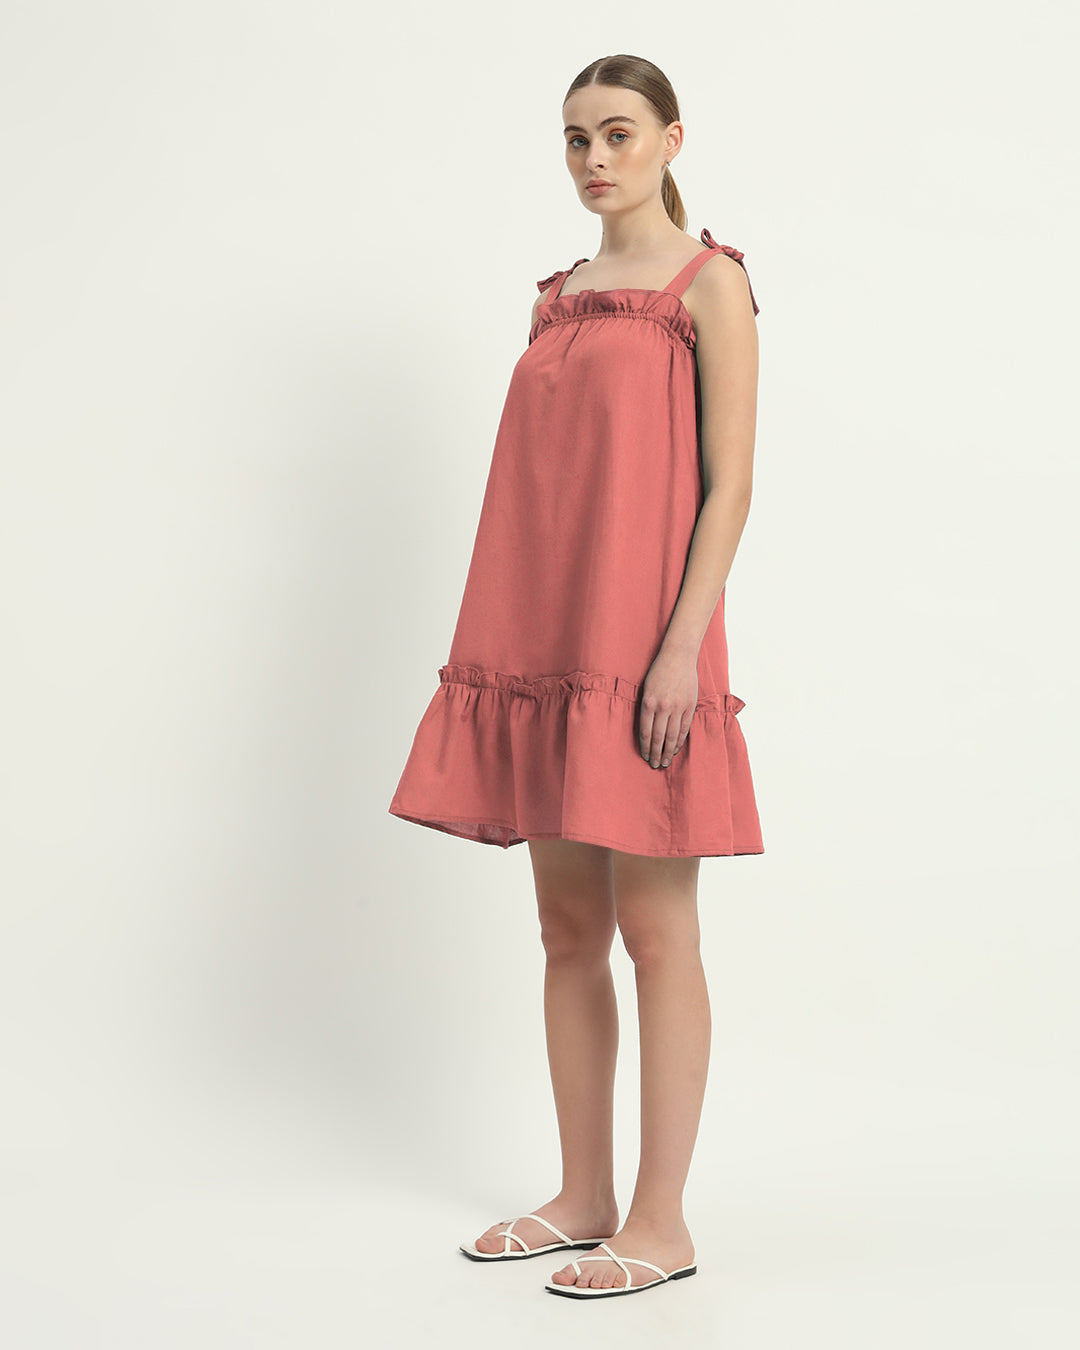 The Ivory Pink Amalfi Cotton Dress